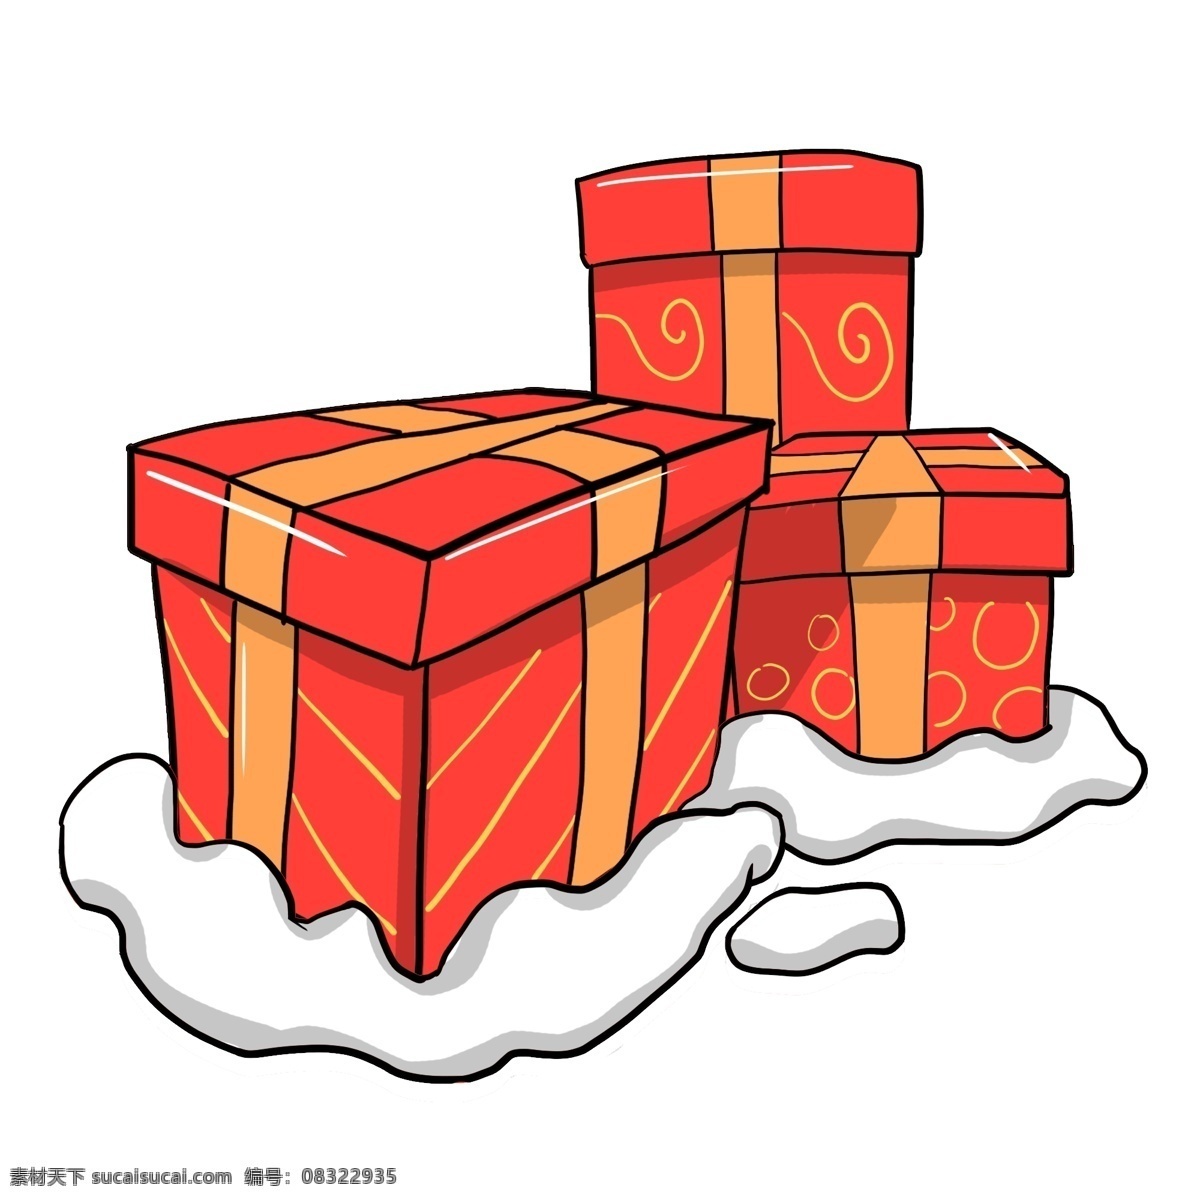 卡通 手绘 圣诞节 红色 礼盒 插画 方形 黄色丝带 条纹 纹理 贺礼 礼品 祝贺 心意 冬季 寒冬 下雪 卡通手绘